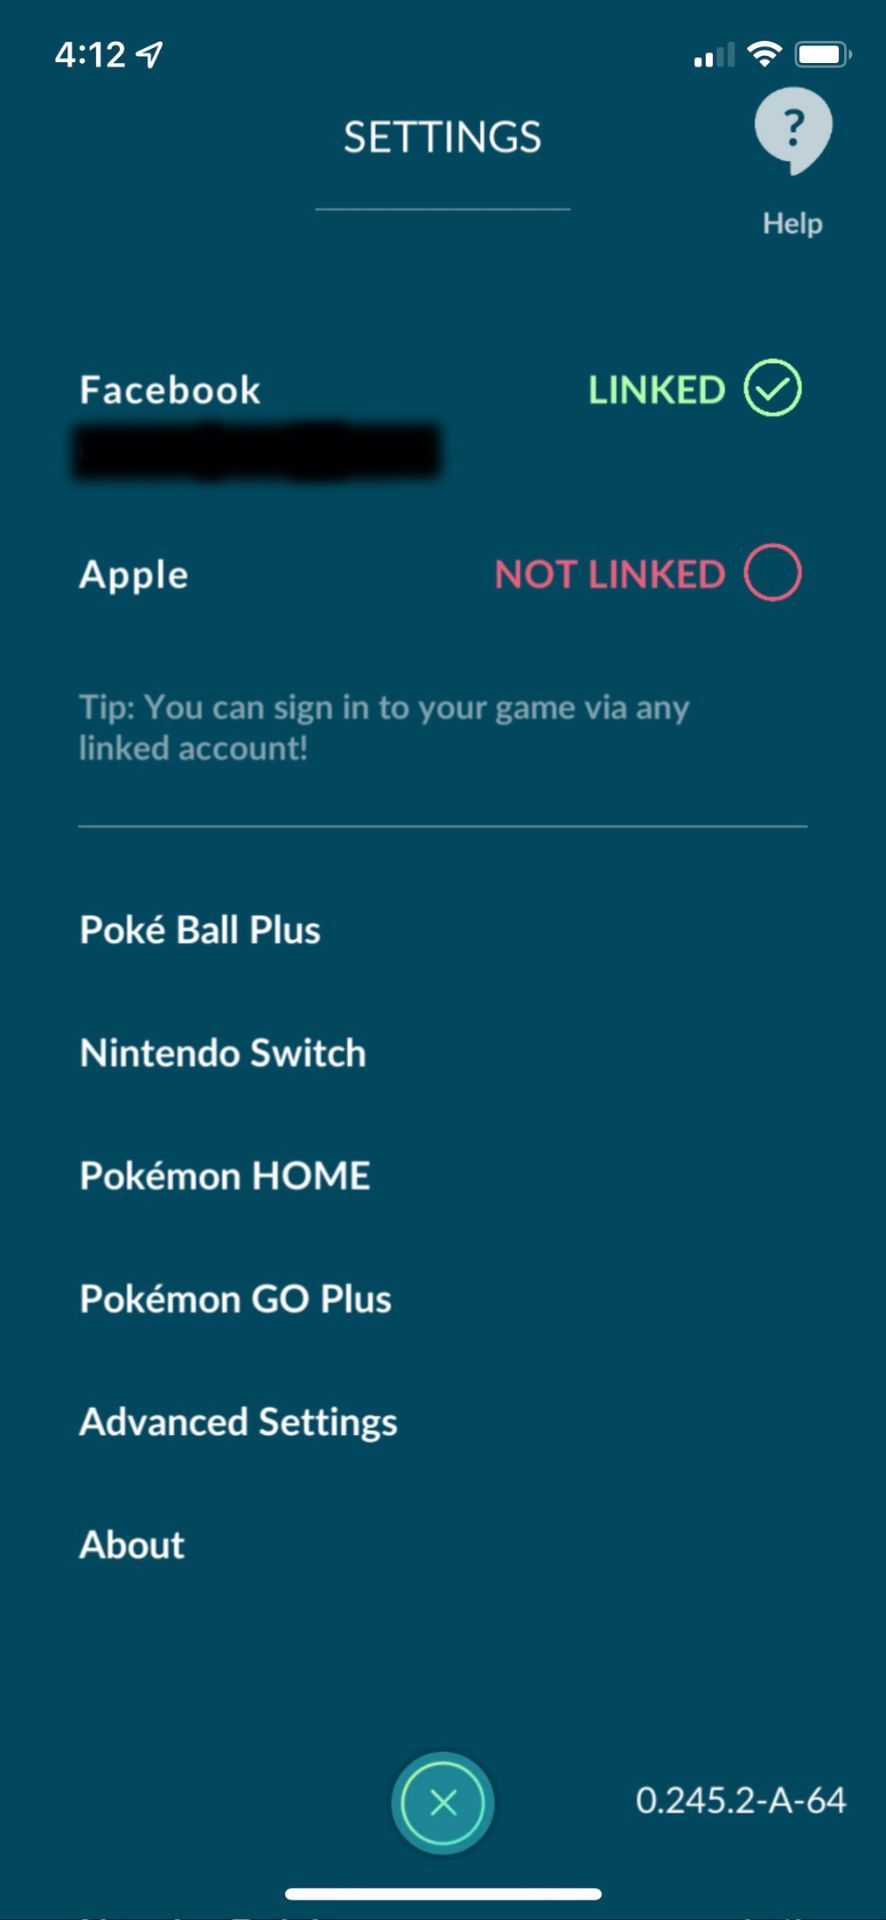 How to connect a Poke ball plus to pokemon go open poke ball plus